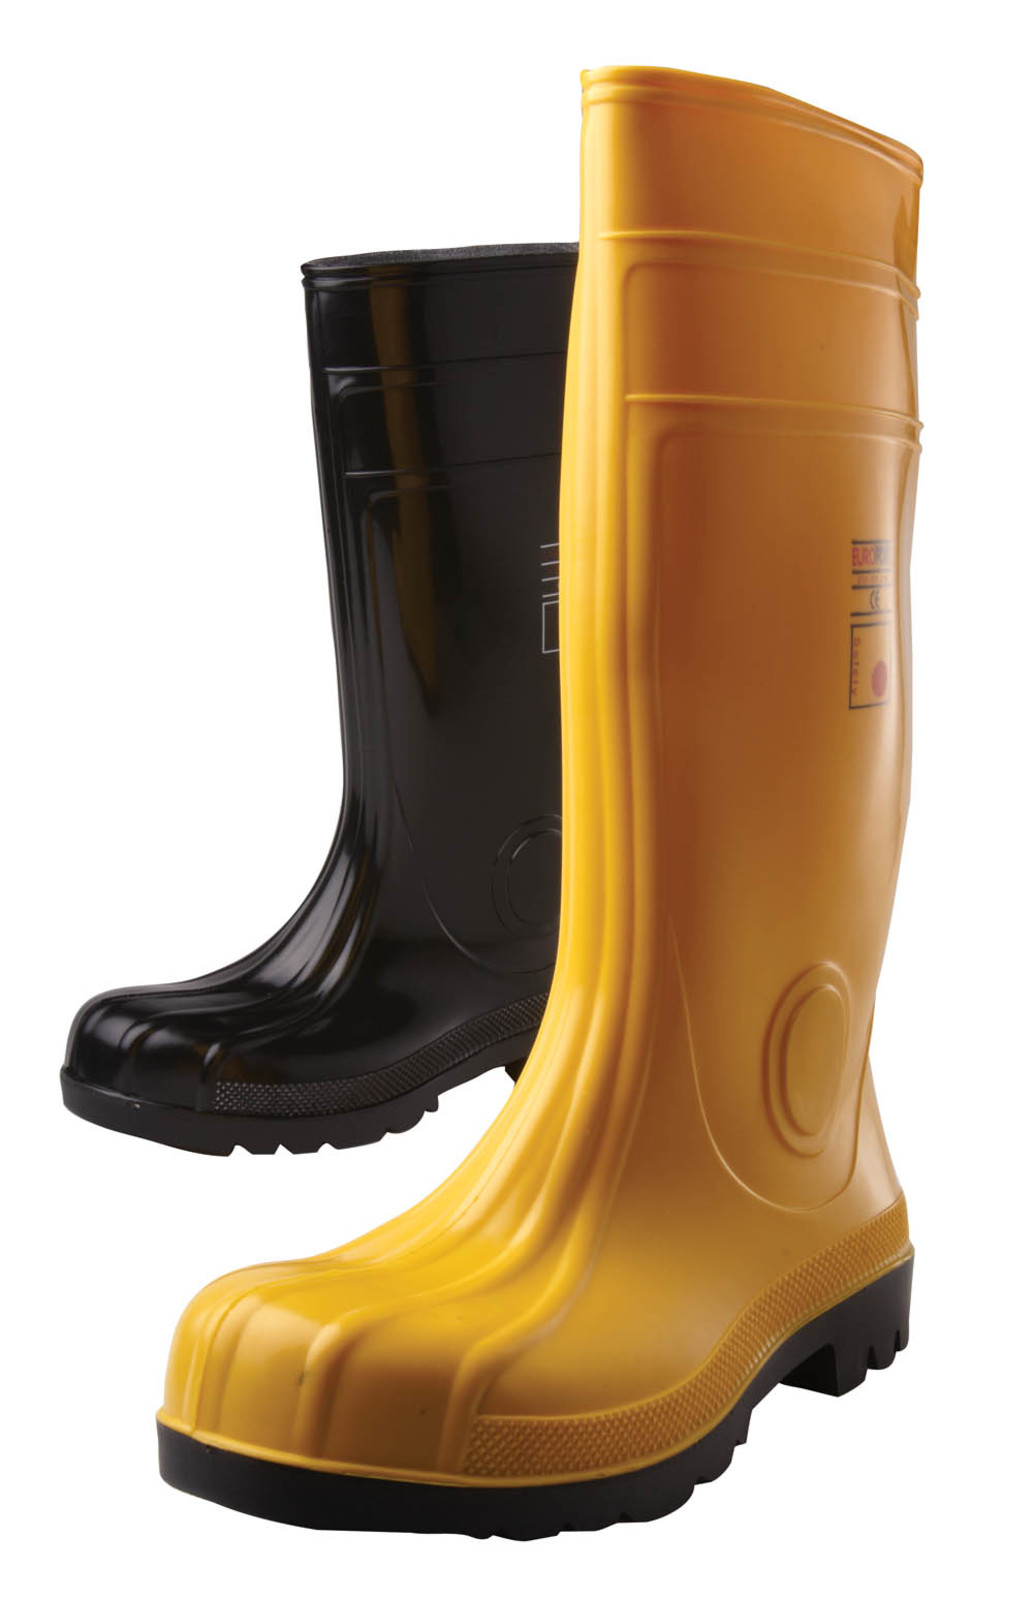 Gumáky Boots Eurofort  S5 - veľkosť: 39, farba: žltá